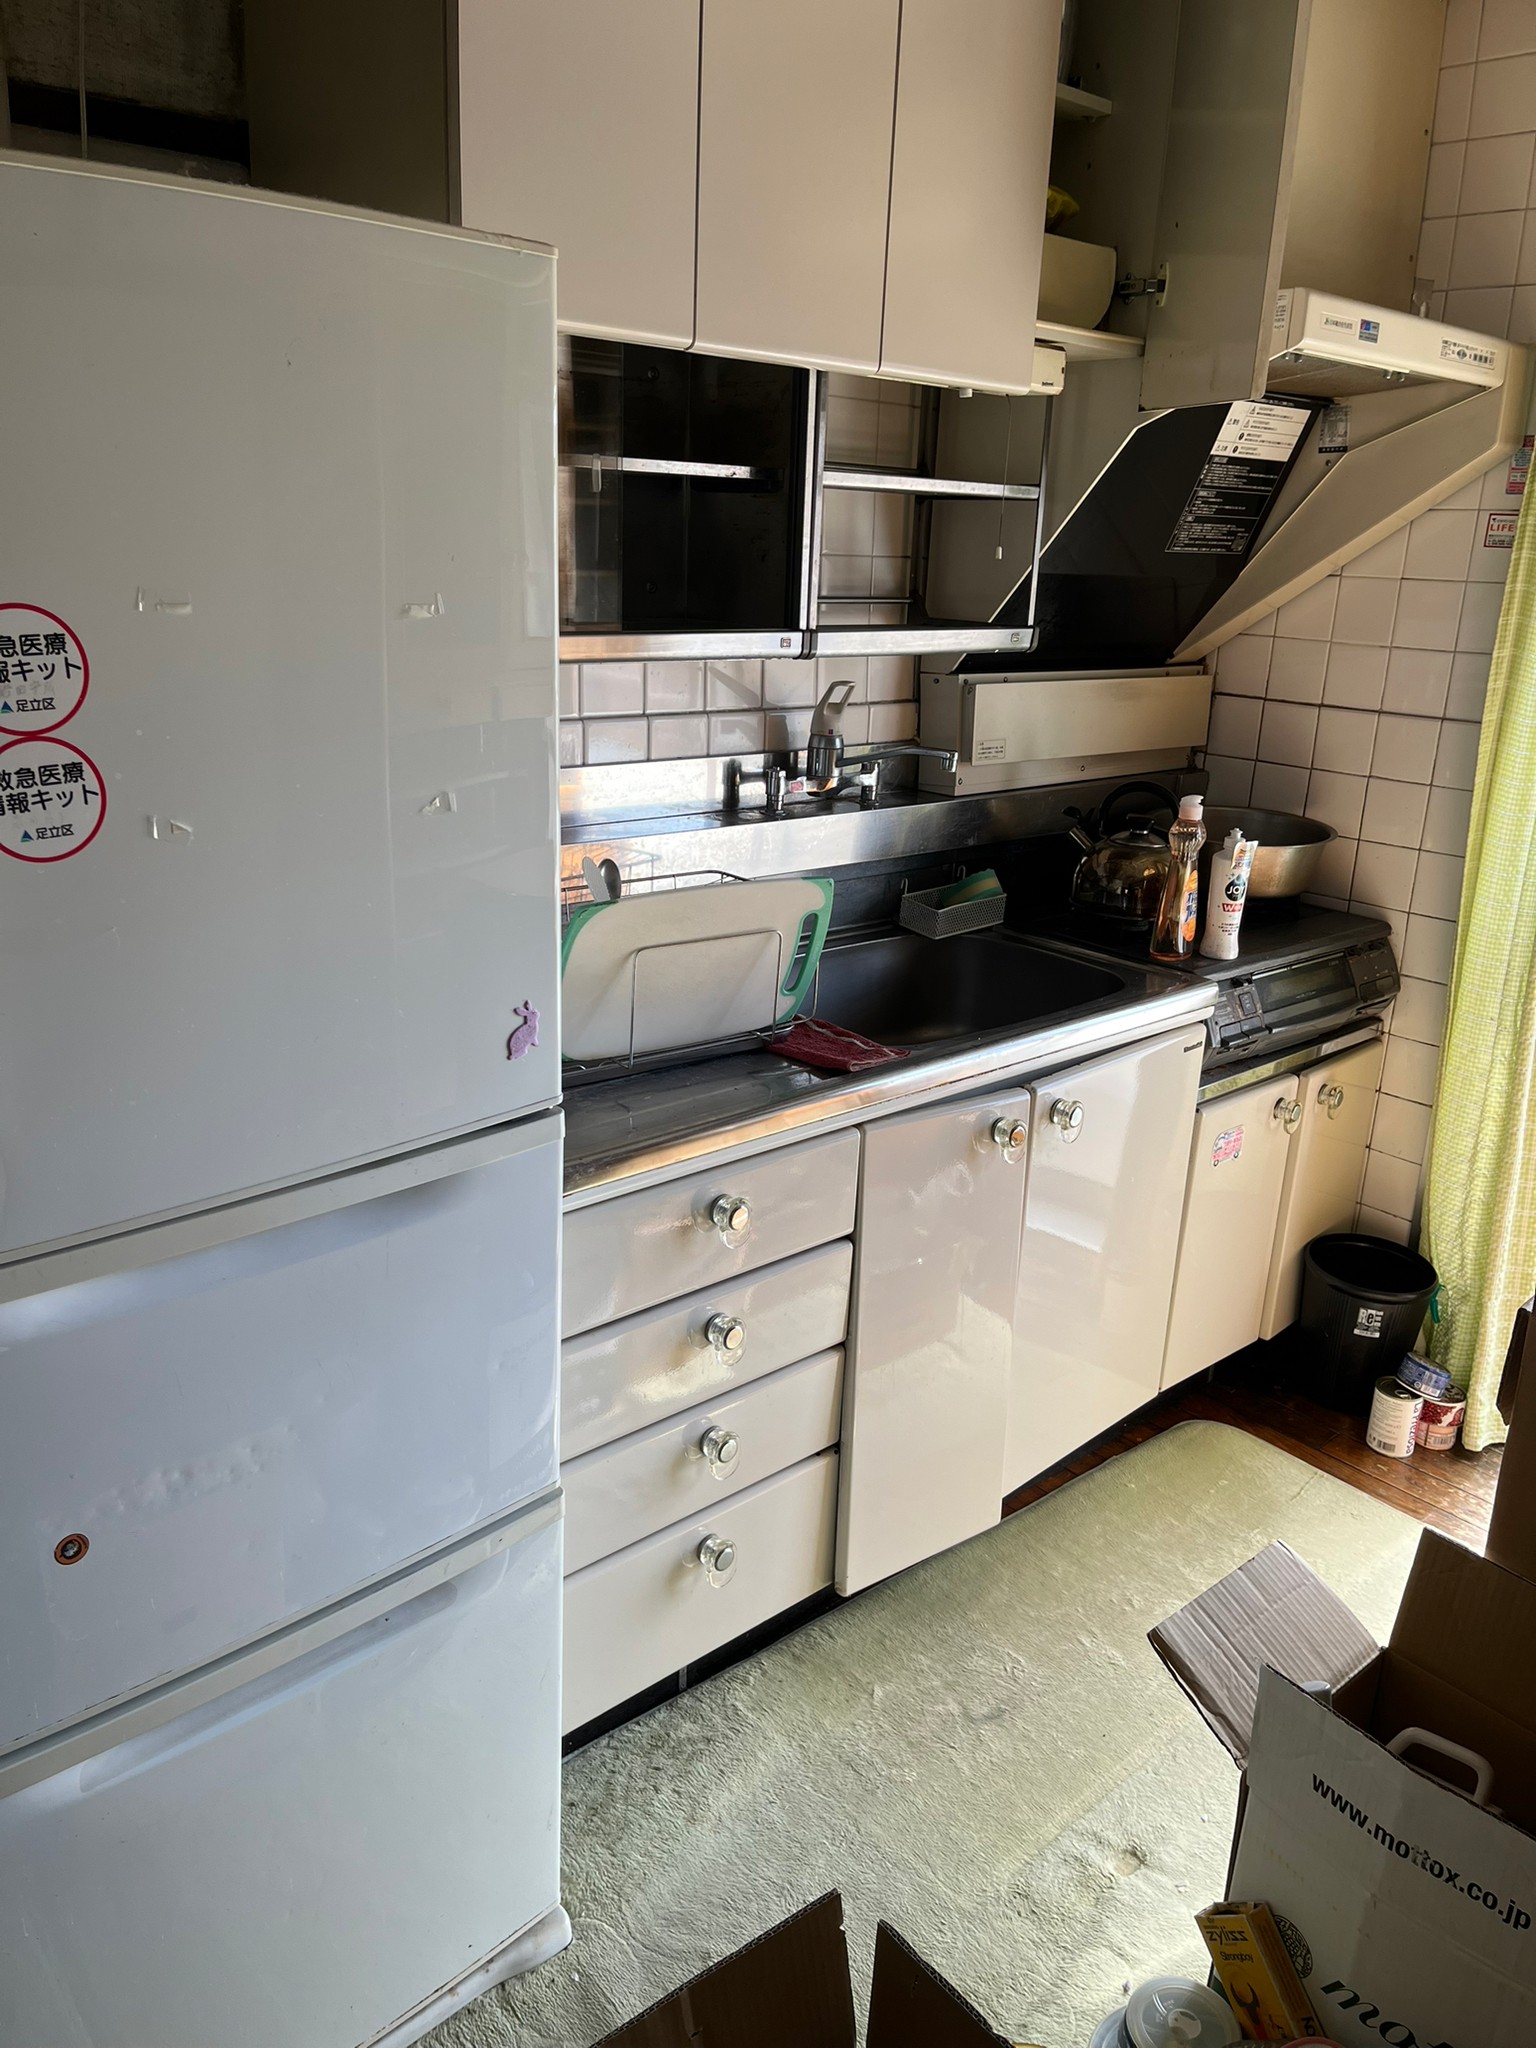 冷蔵庫、キッチン用品全般の回収前の状態